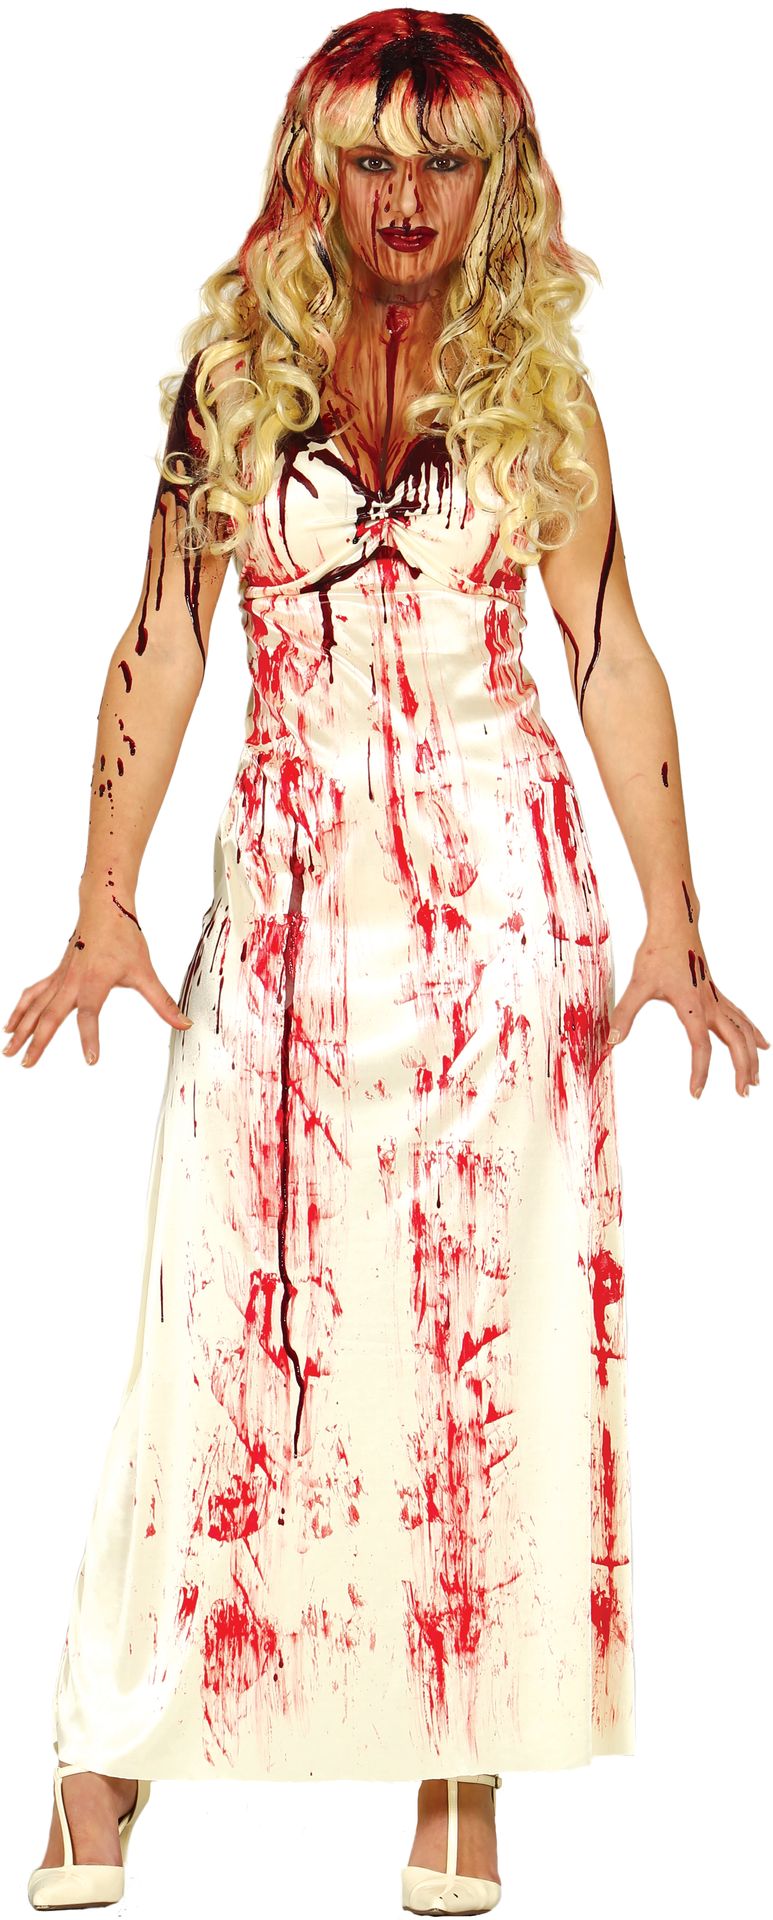 Bloedige zombie bruidsjurk